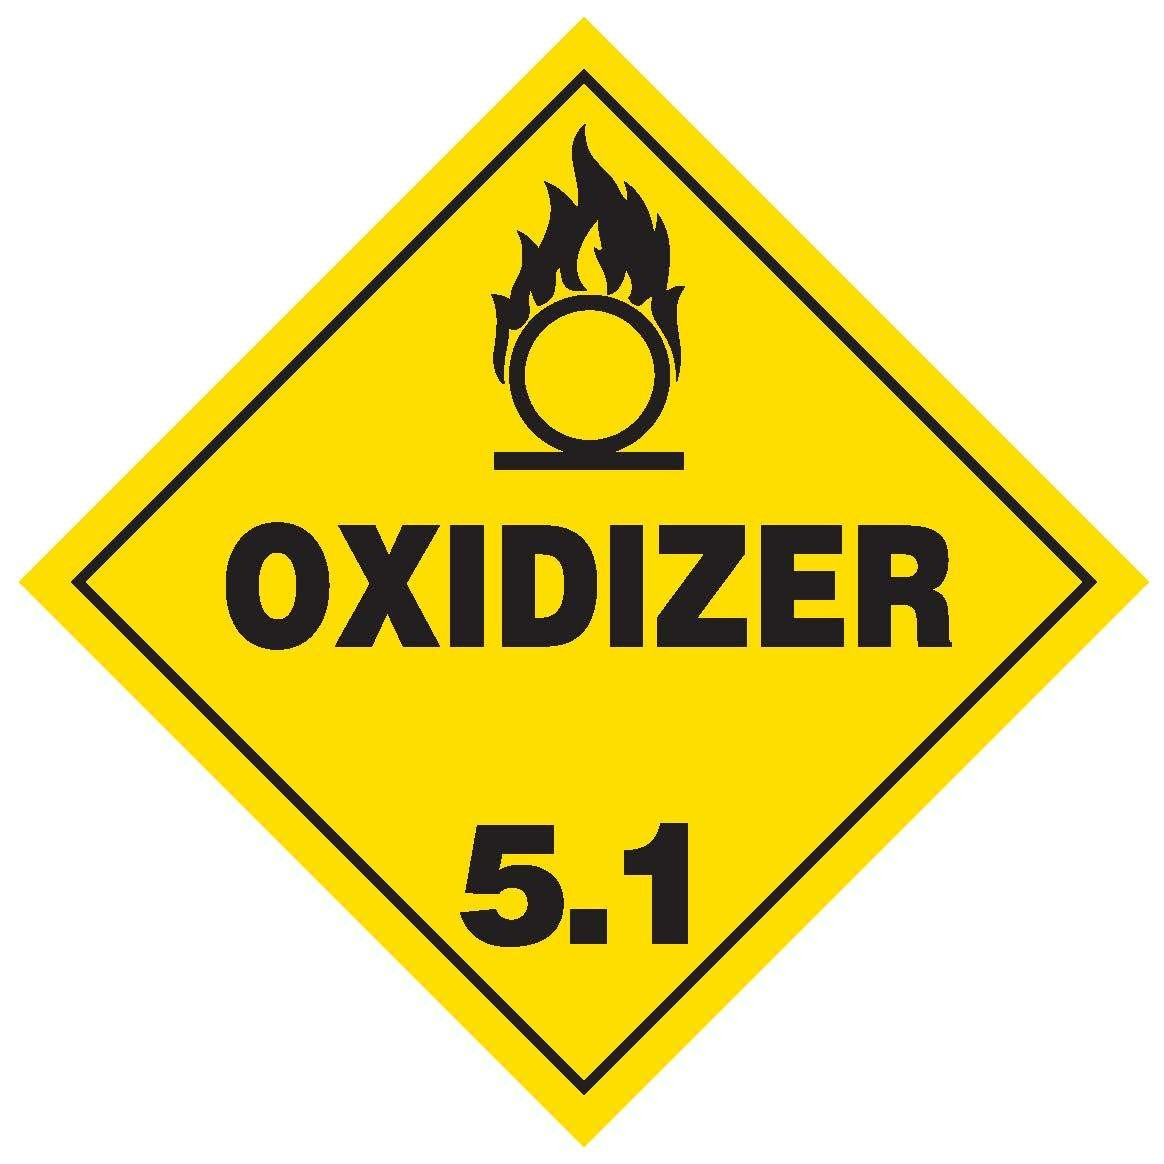 Oxidizer Class 5